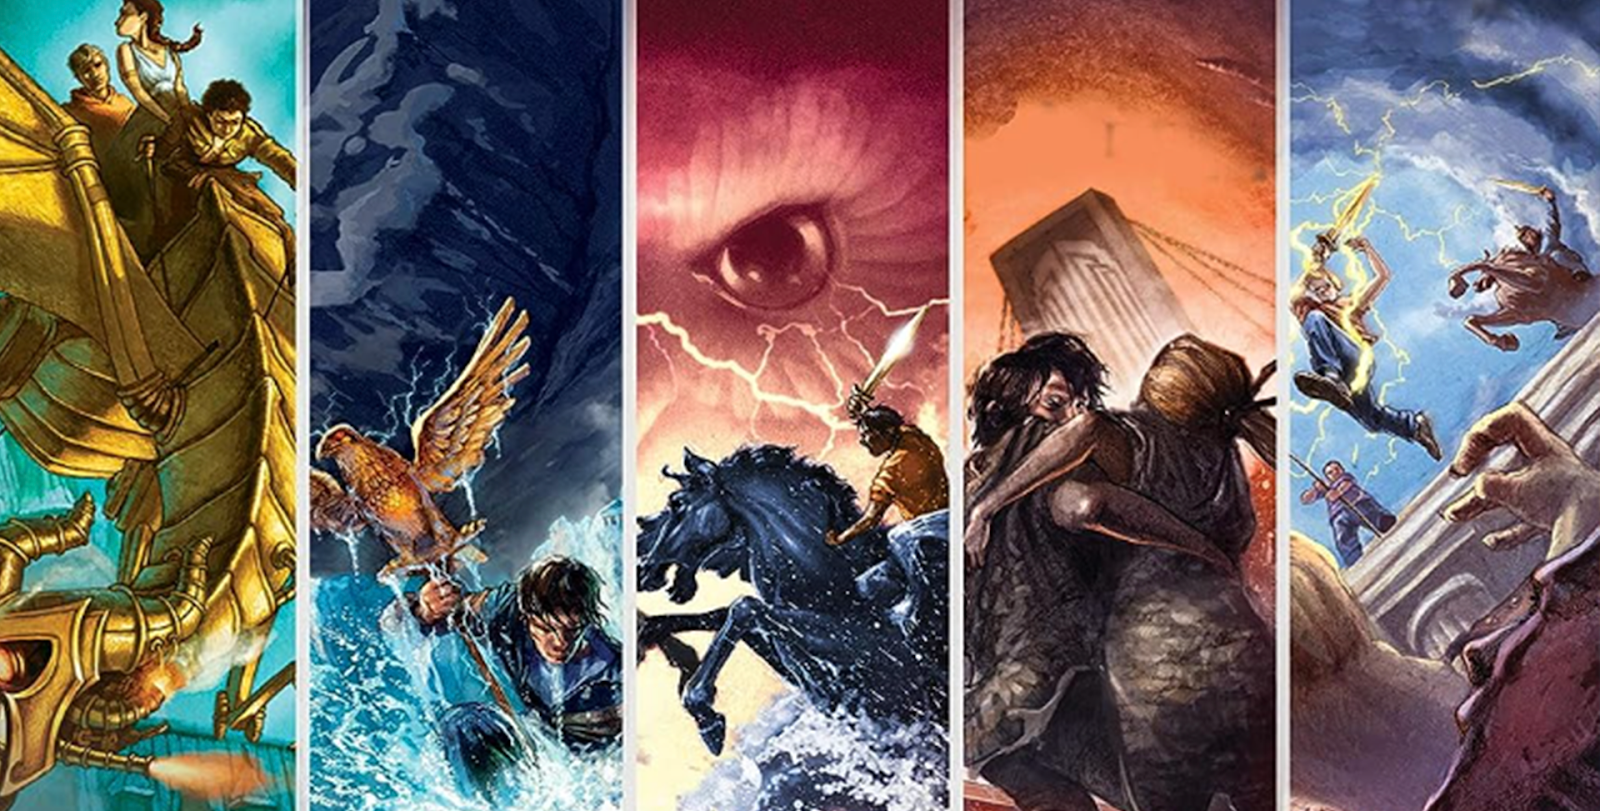 Recorte das capas dos 5 títulos de "Os Heróis do Olimpo", por Rick Riordan.